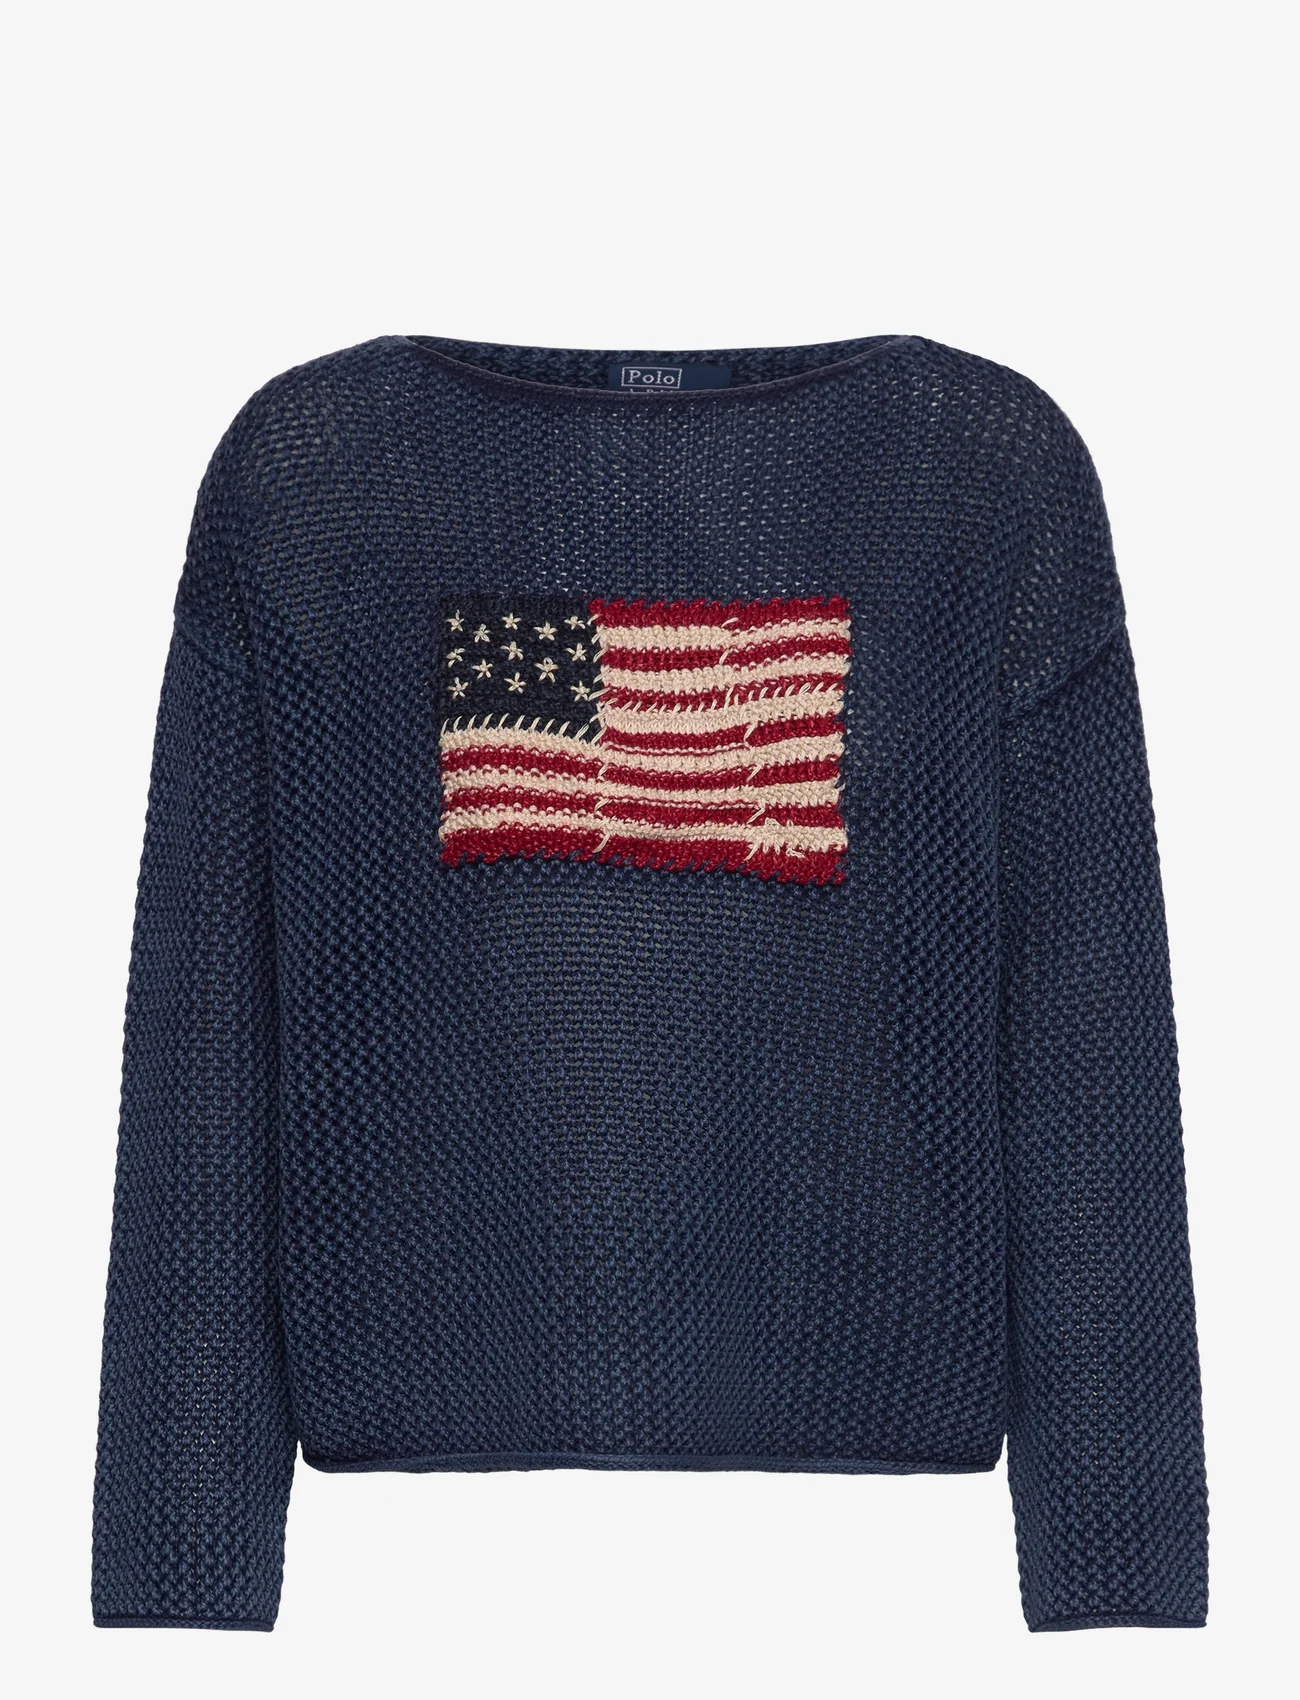 Polo Ralph Lauren - Flag Pointelle Cotton-Linen Sweater - neulepuserot - blue multi - 0